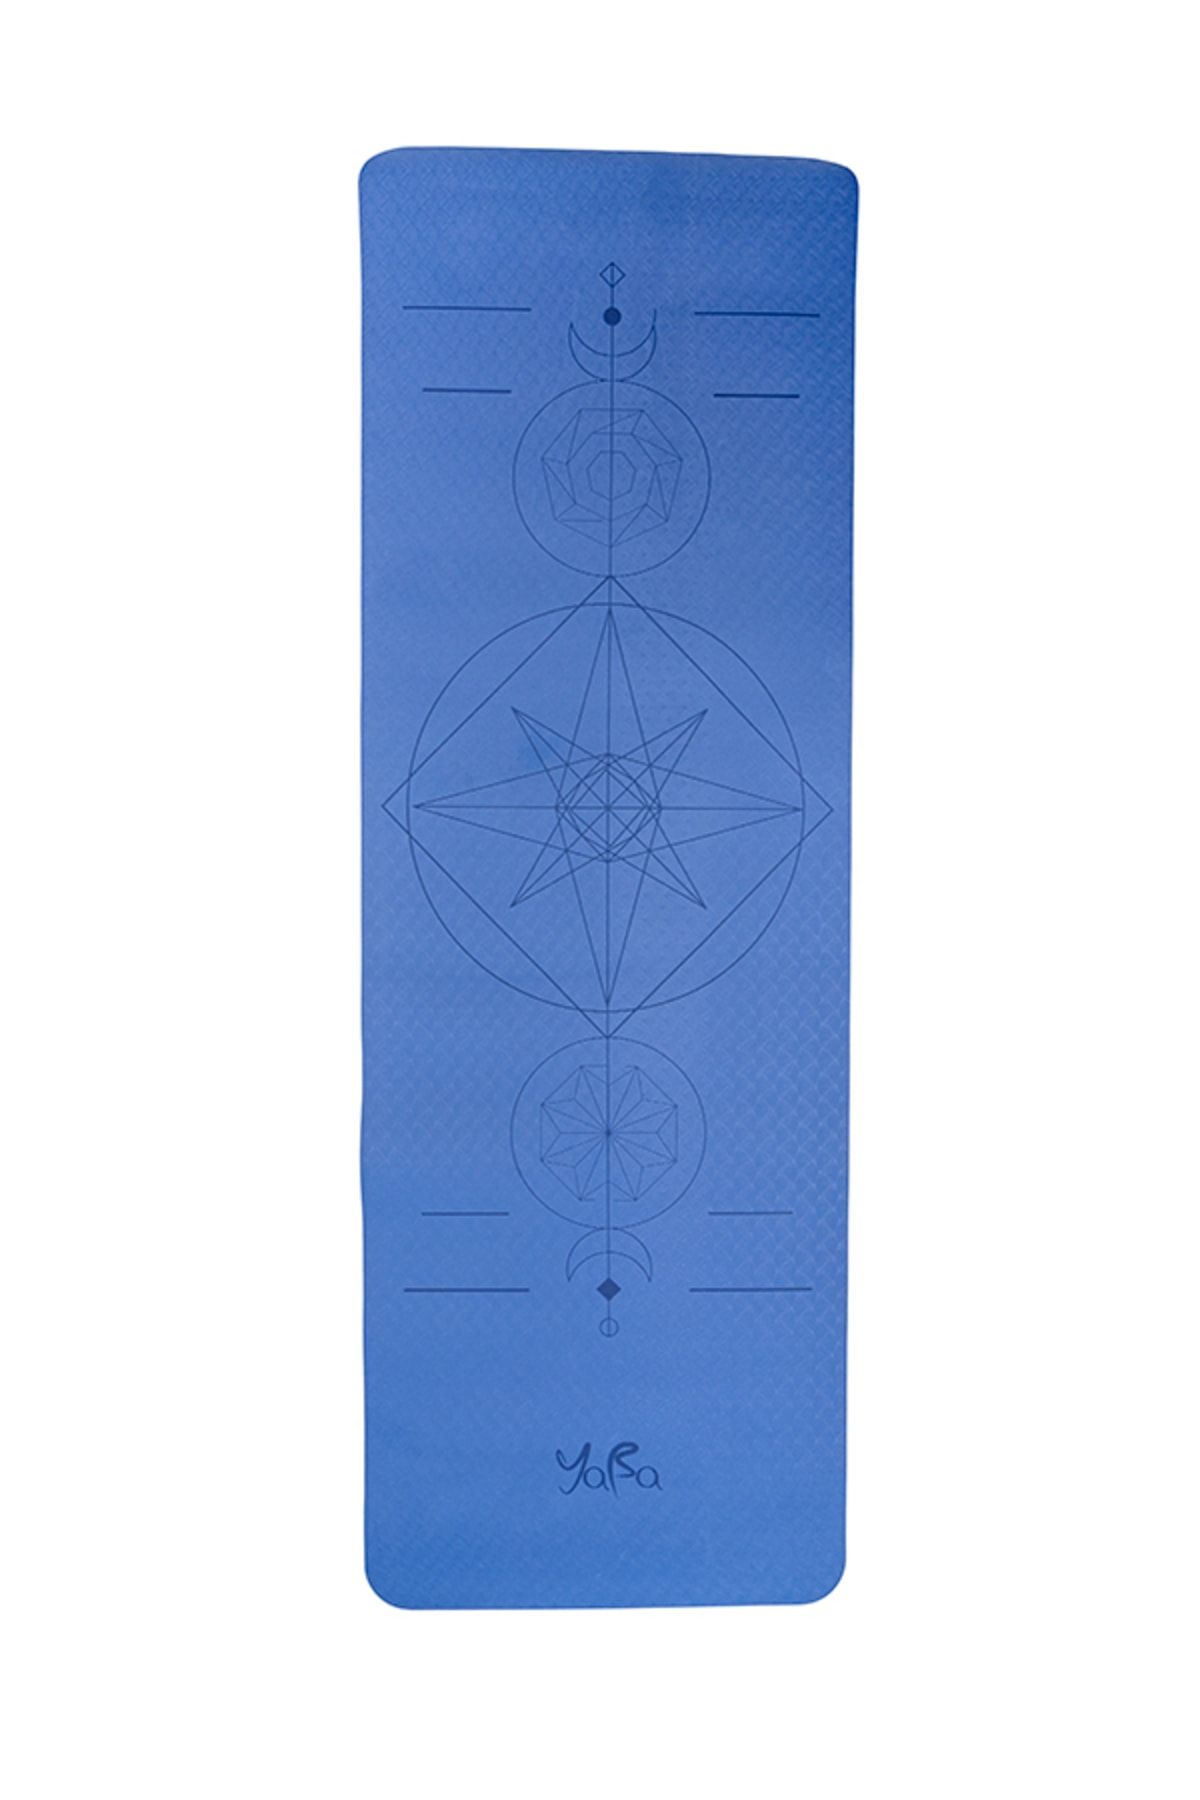 YABA Tpe Yoga Matı 6mm Pilates Matı Yıldız 183*61*0.6cm